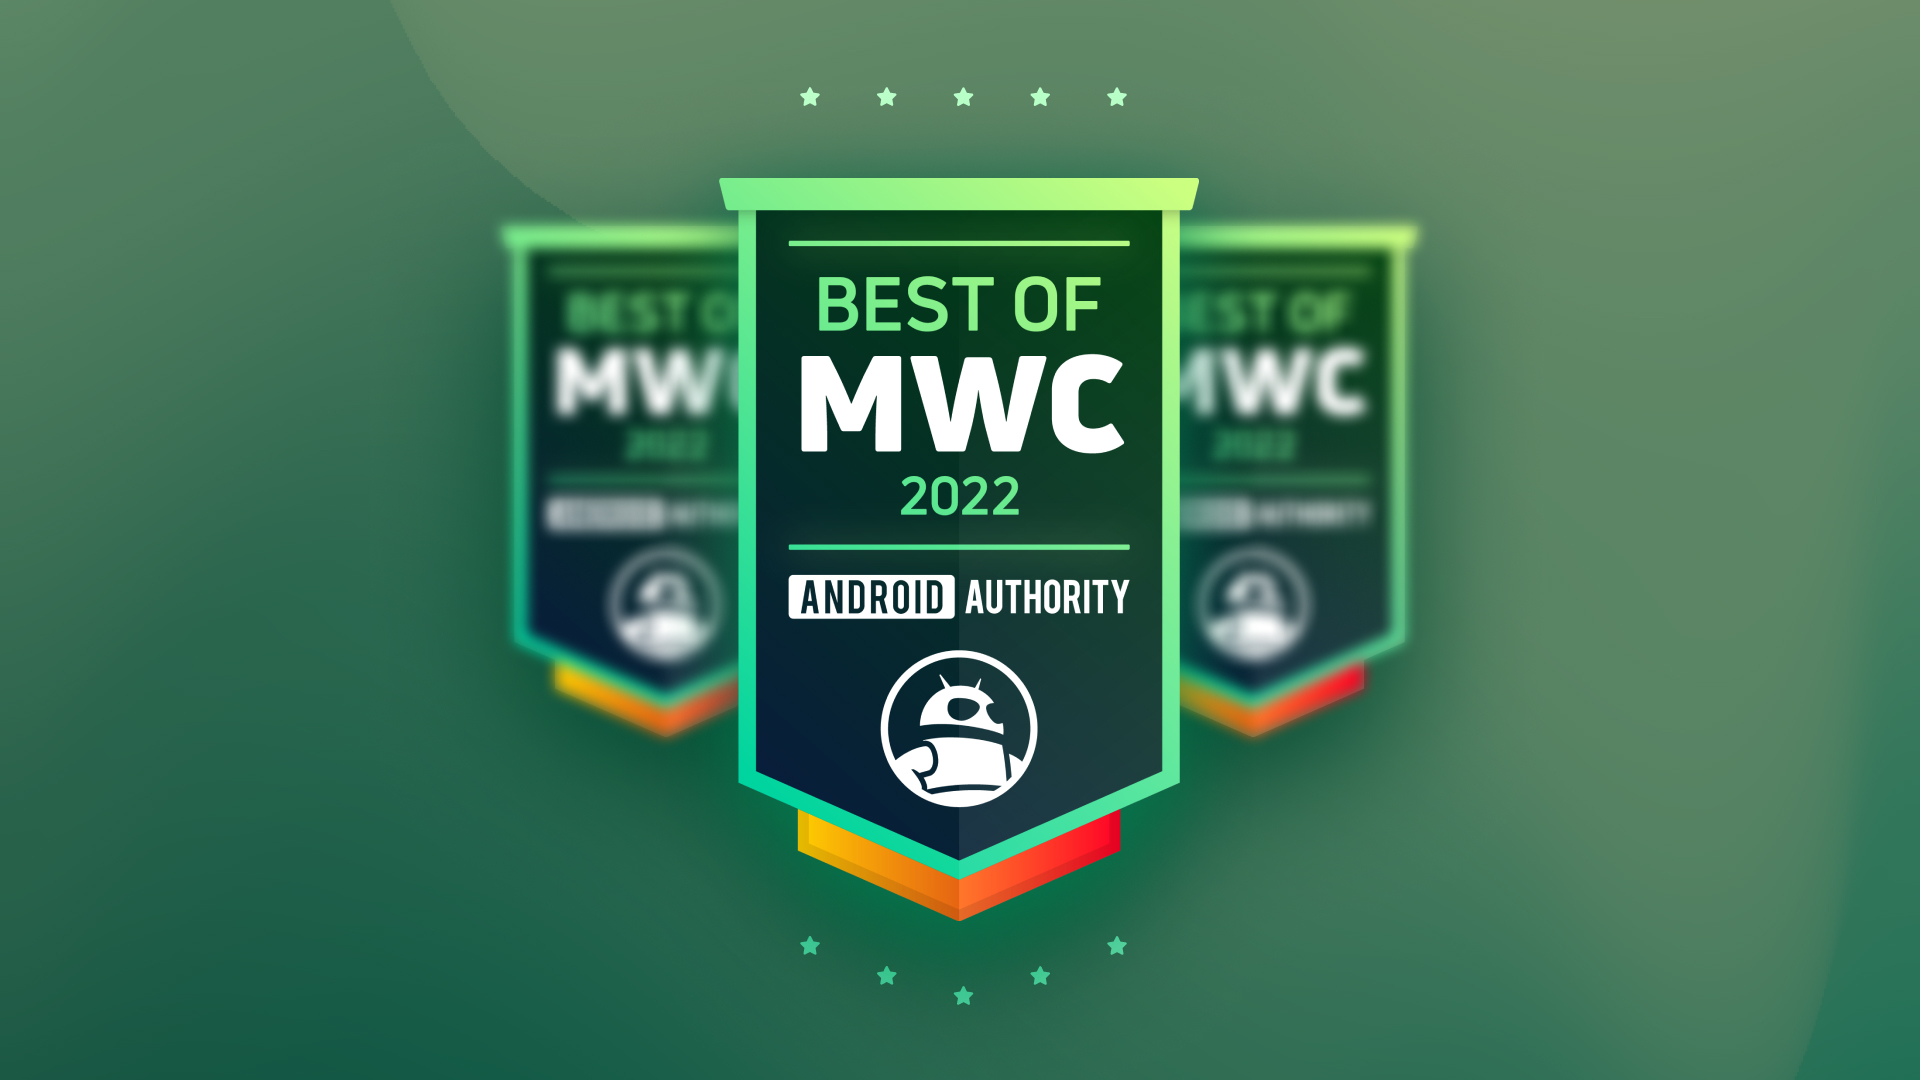 Best of MWC 2022 Awards header